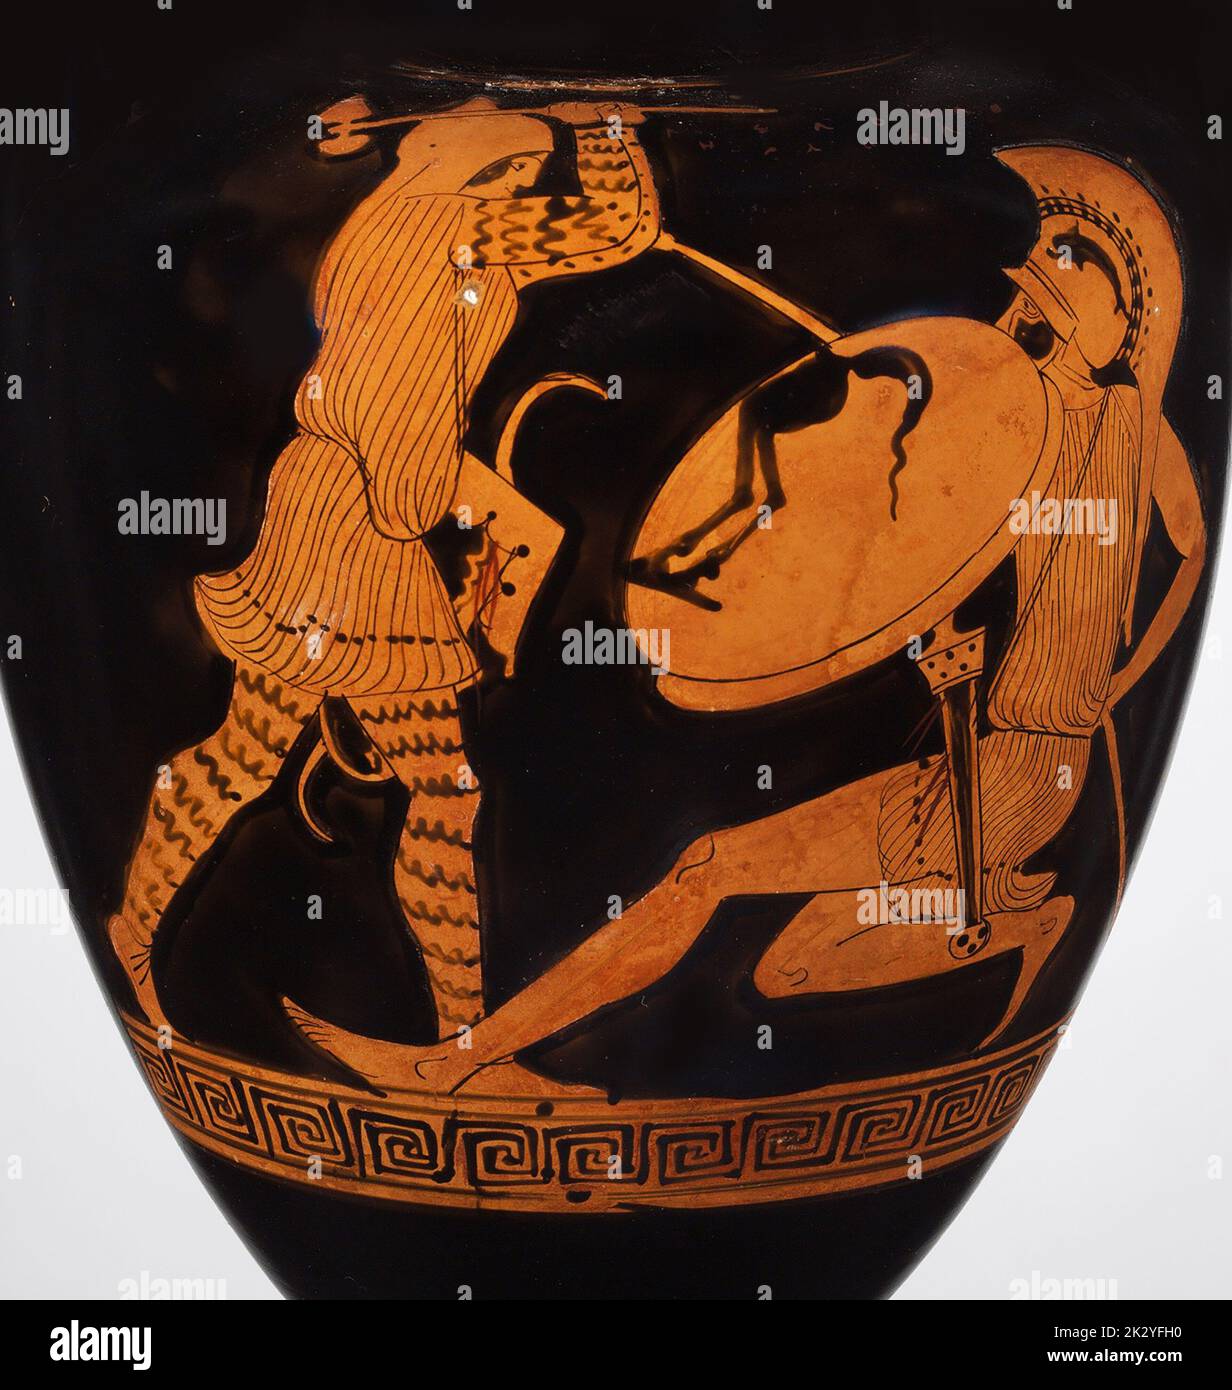 Kampf zwischen einem Amazonas und einem Griechen. (Nolan Amphora). Museum: Metropolitan Museum of Art, New York. Autor: Alcimachus Painter. Stockfoto